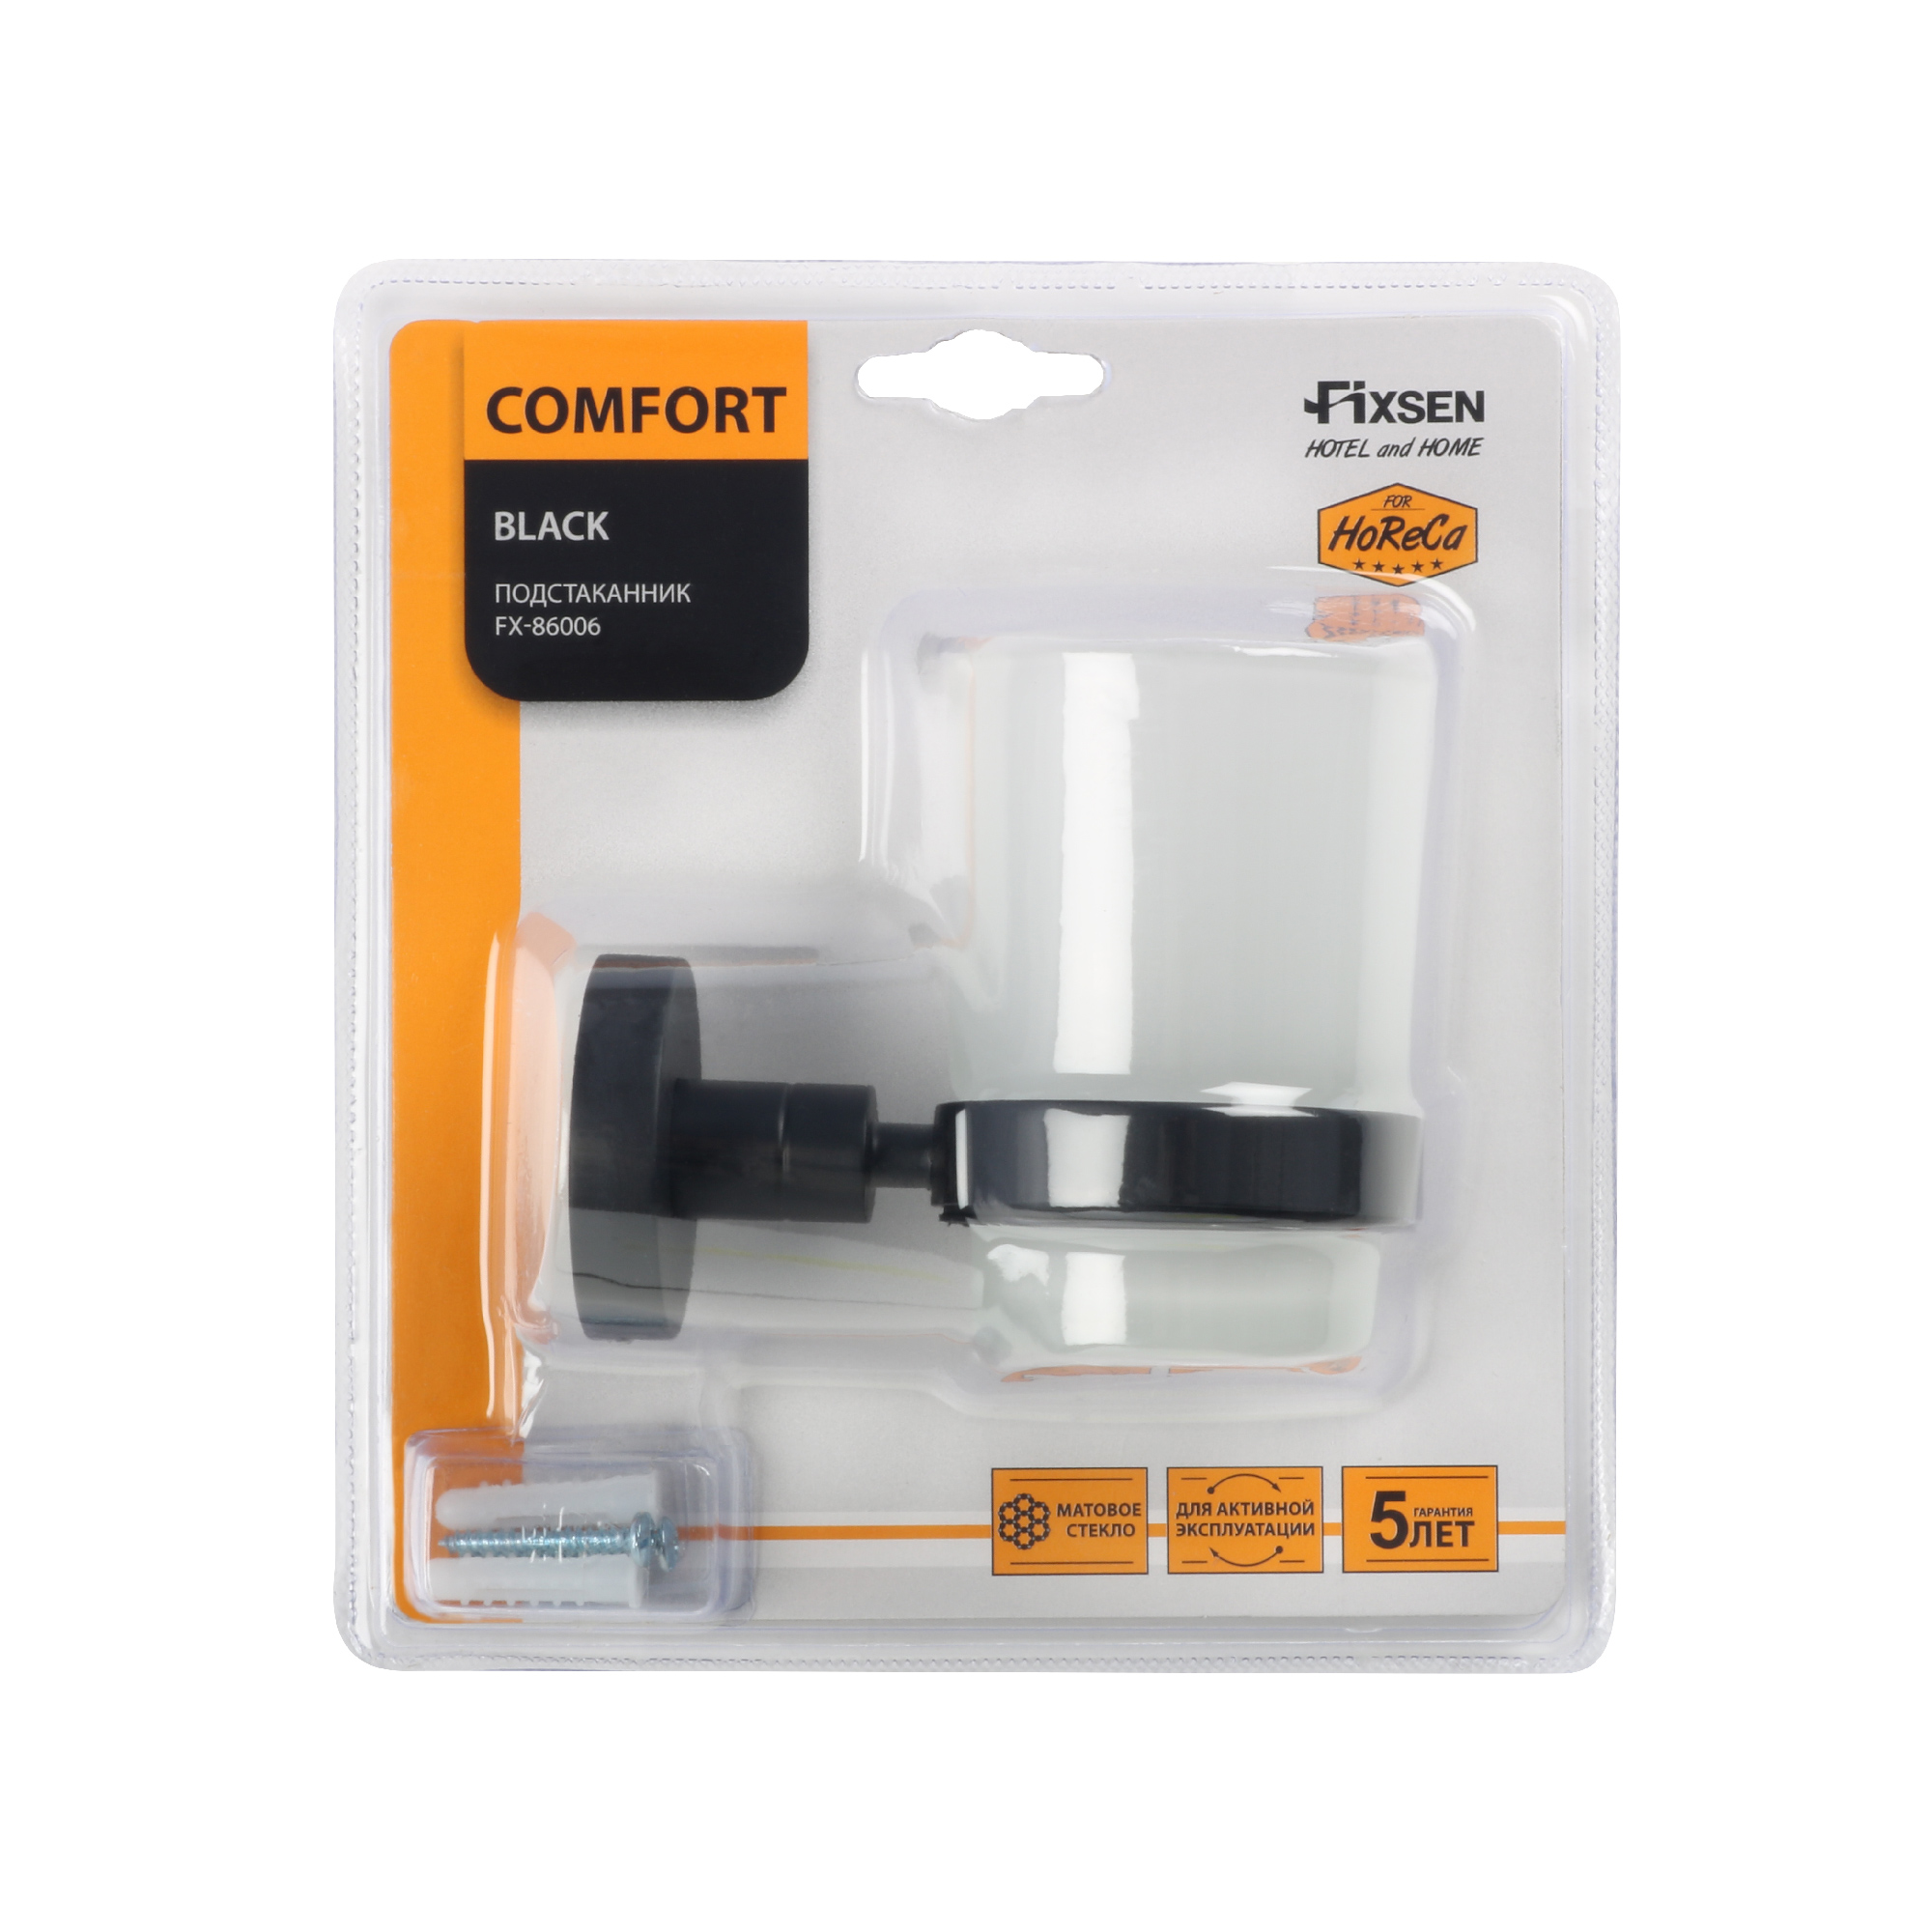 Подстаканник одинарный черный Fixsen Comfort  Black (FX-86006) - фото 4